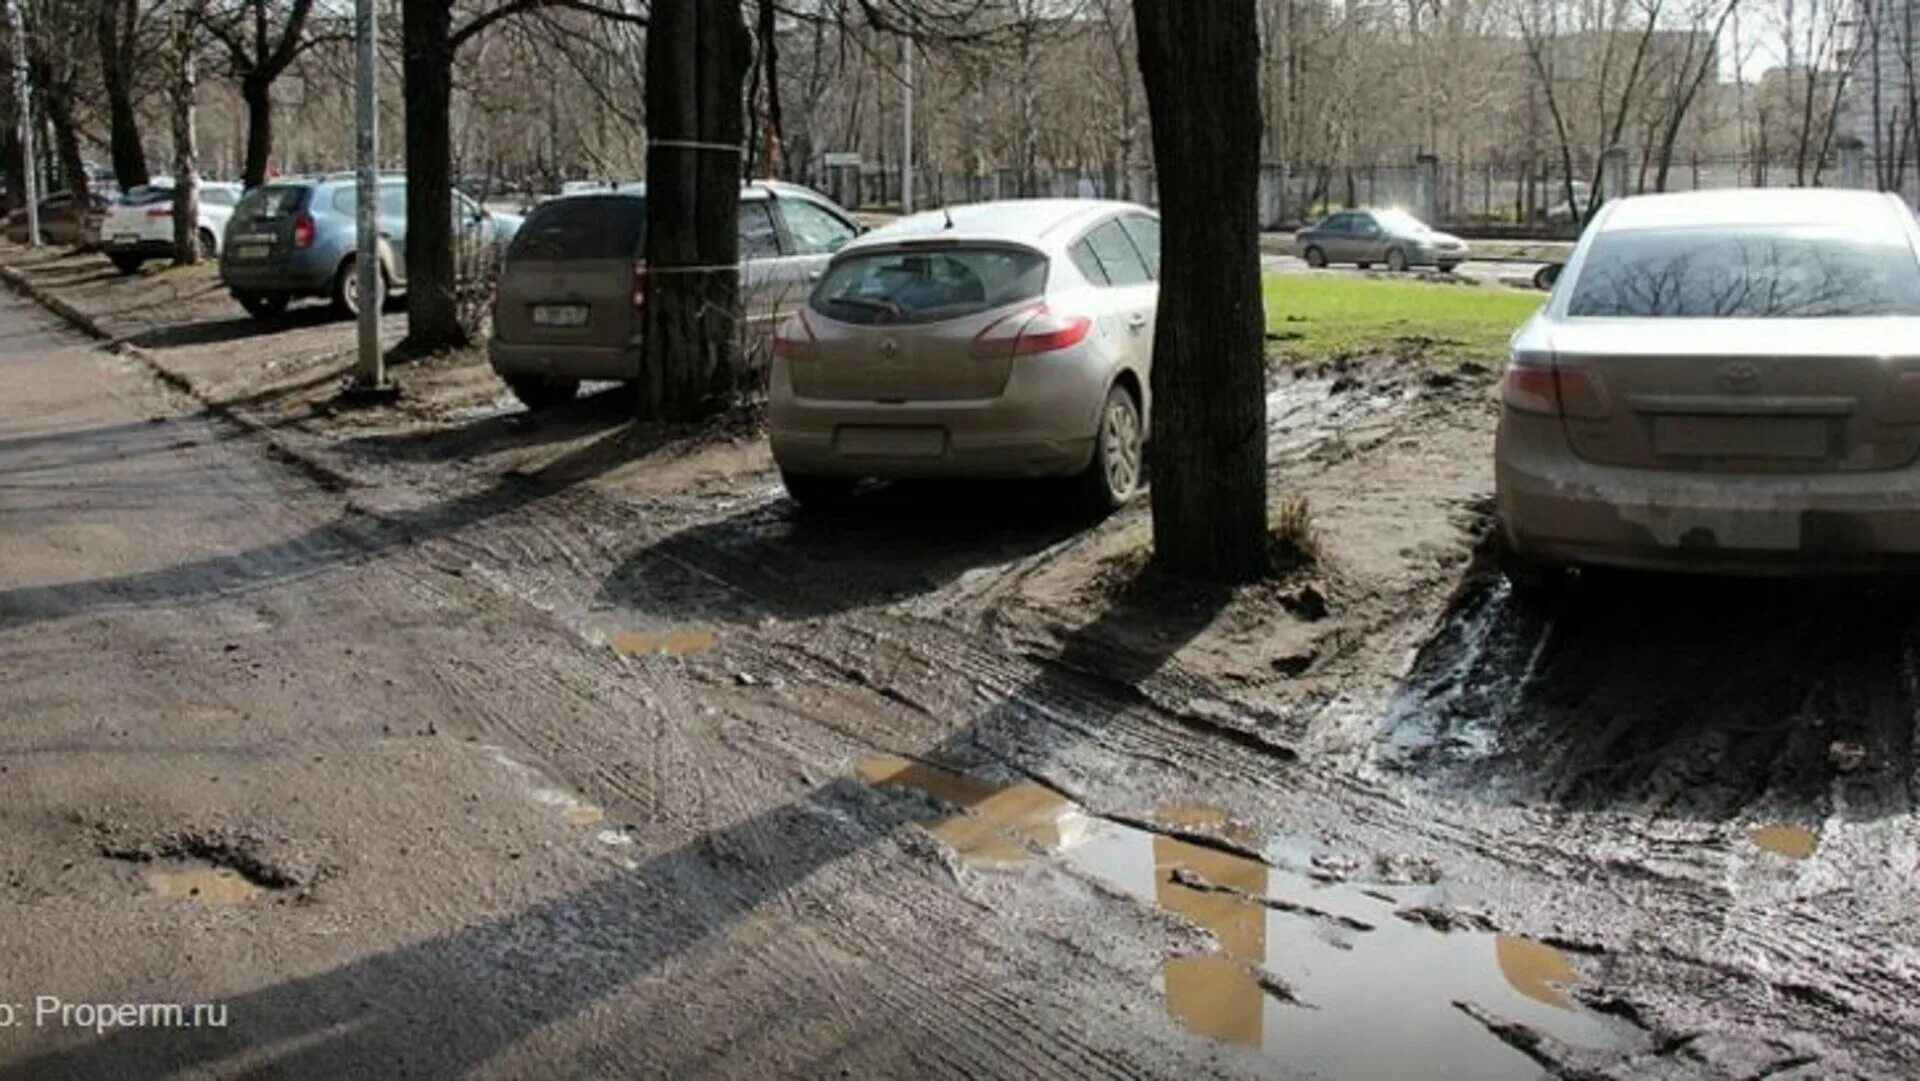 Машина на тротуаре. Грязь на тротуаре. Парковка на газоне грязь. Парковка на тротуаре во дворе.